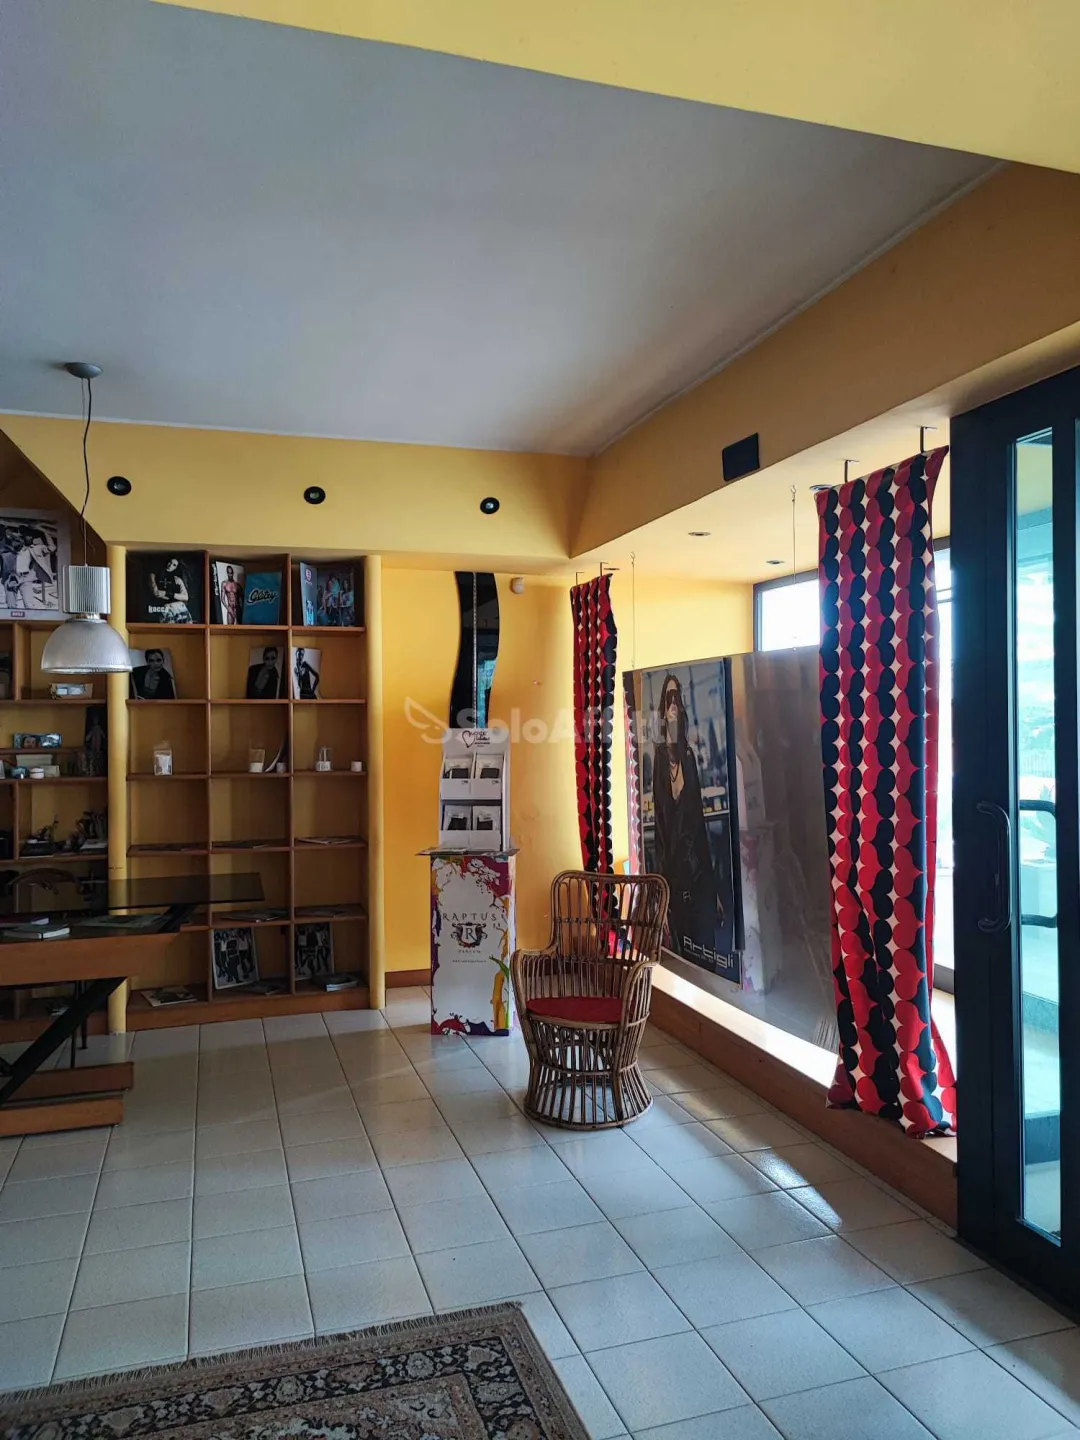 Immagine per Locale commerciale in affitto a Sezze corso Della Repubblica